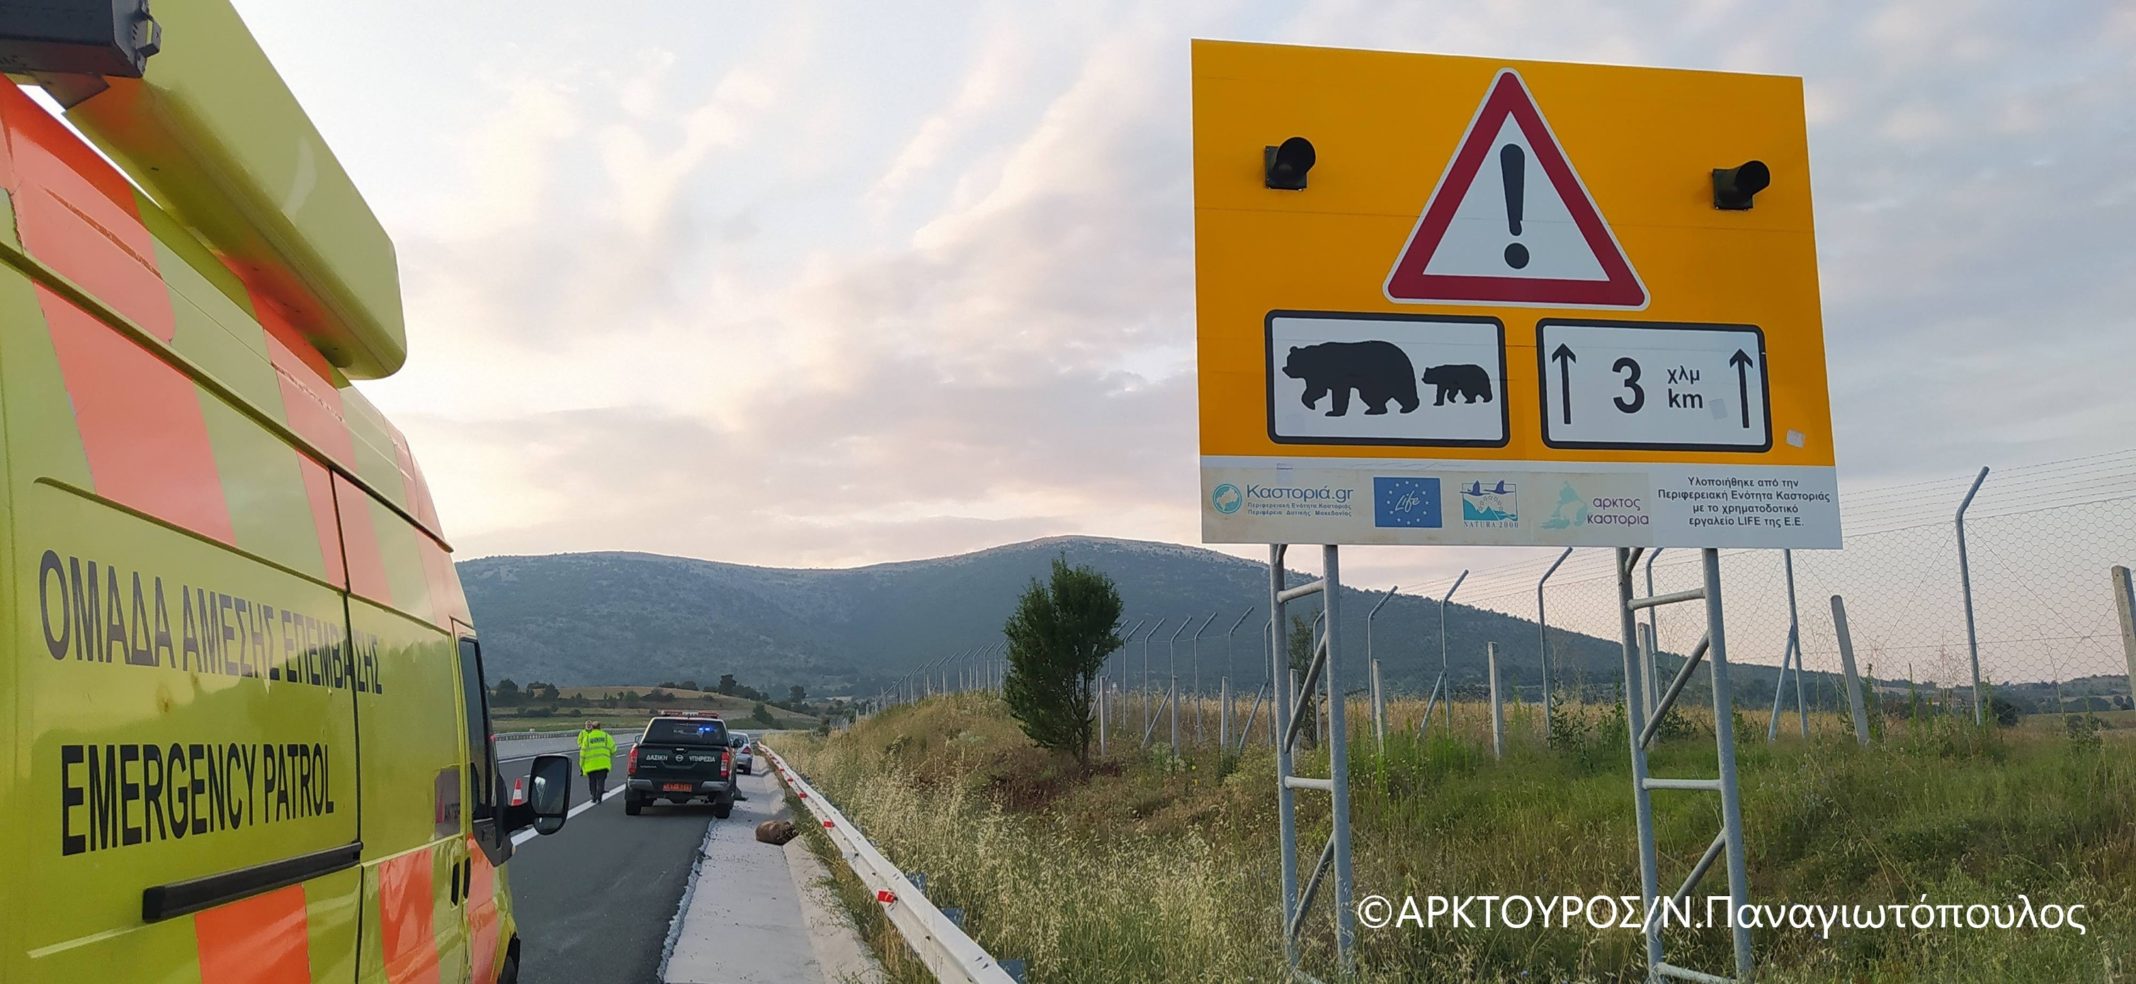 Επιπλέον μέτρα θα ληφθούν στον κάθετο άξονα Σιάτιστα – Κρυσταλλοπηγή της Εγνατίας οδού, μετά και το τελευταίο ατύχημα στο οποίο έχασε τη ζωή της αρκούδα 